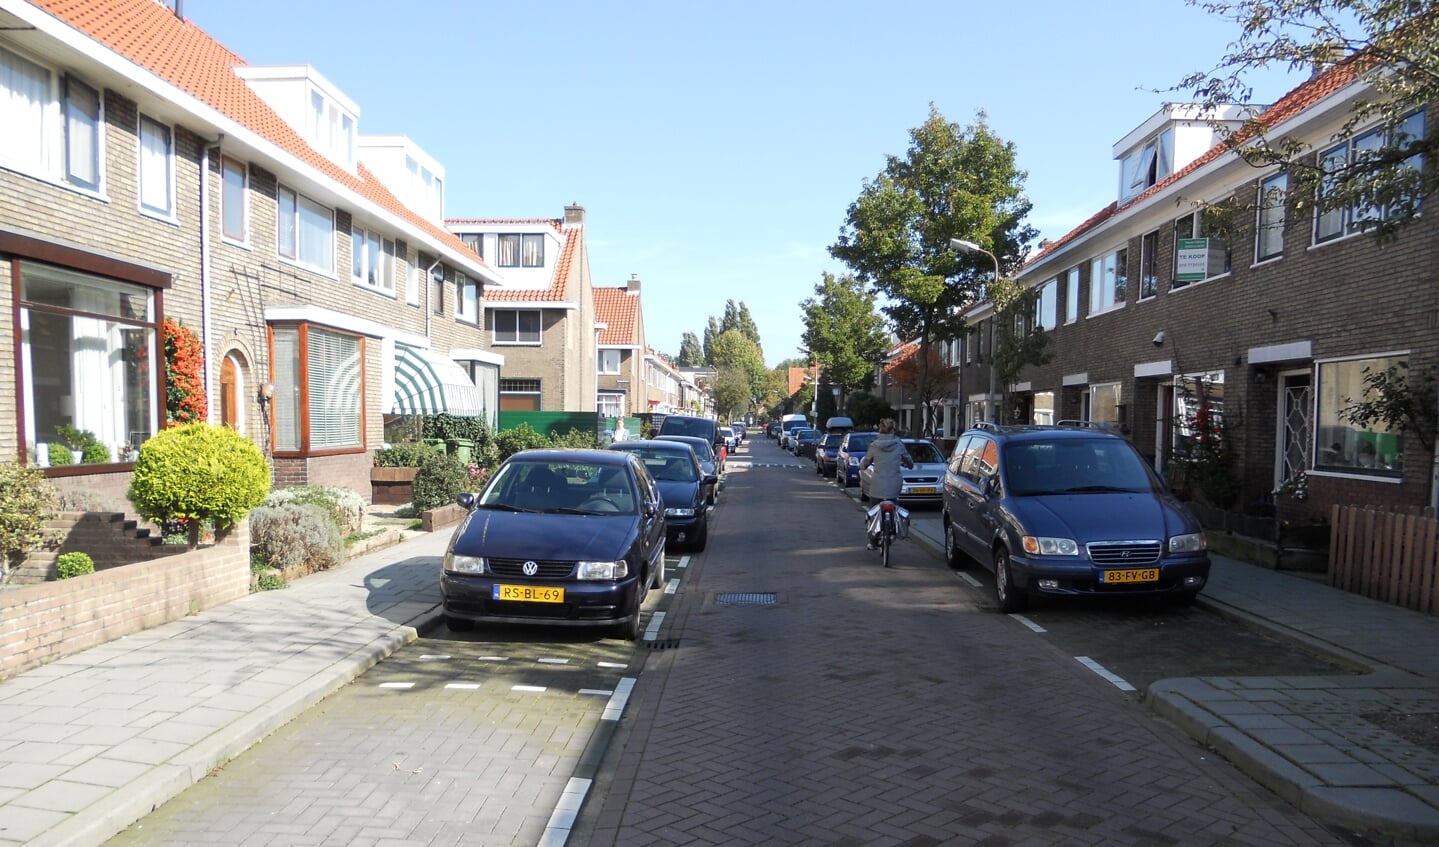 De Meidoornstraat in Zaandam Zuid waar ooit de woningen voor 10.000 gulden werden verkocht...  